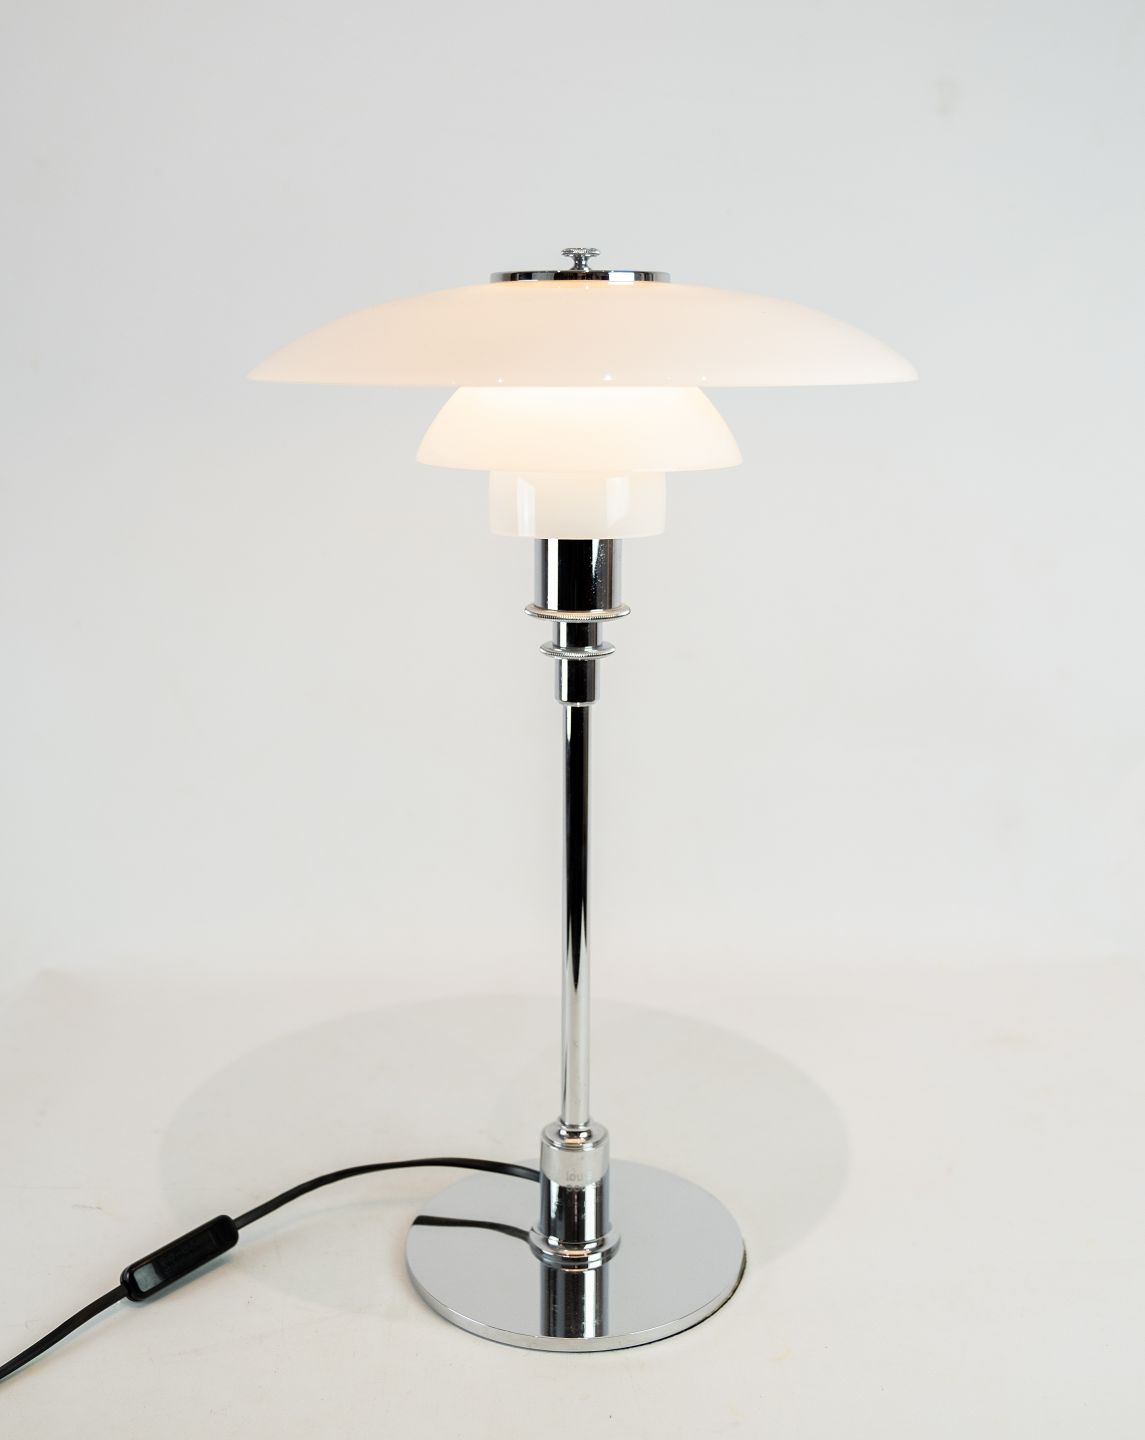 KAD ringen - PH 3/2 bordlampe med krom stel og hvidt opal glas skærme, designet af Poul Henni - PH 3/2 bordlampe med krom stel og opal glas skærme, designet af Poul Henni